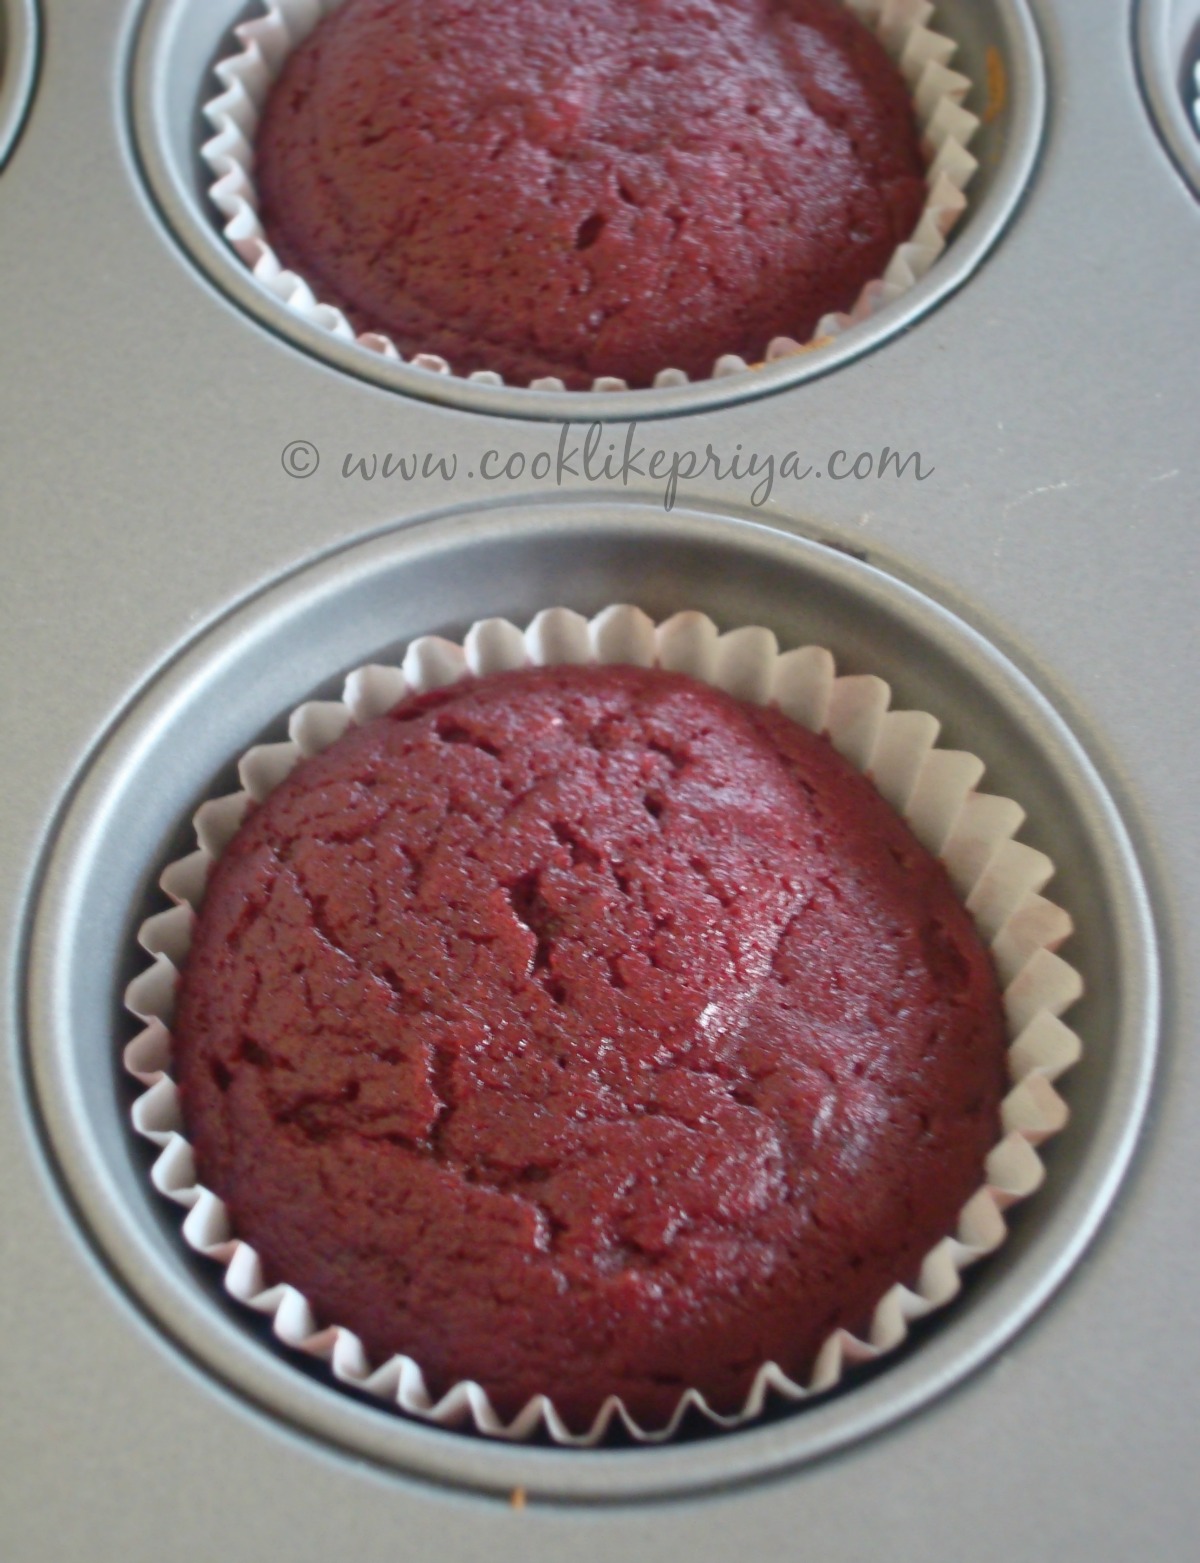 Naturally coloured red velvet cupcake